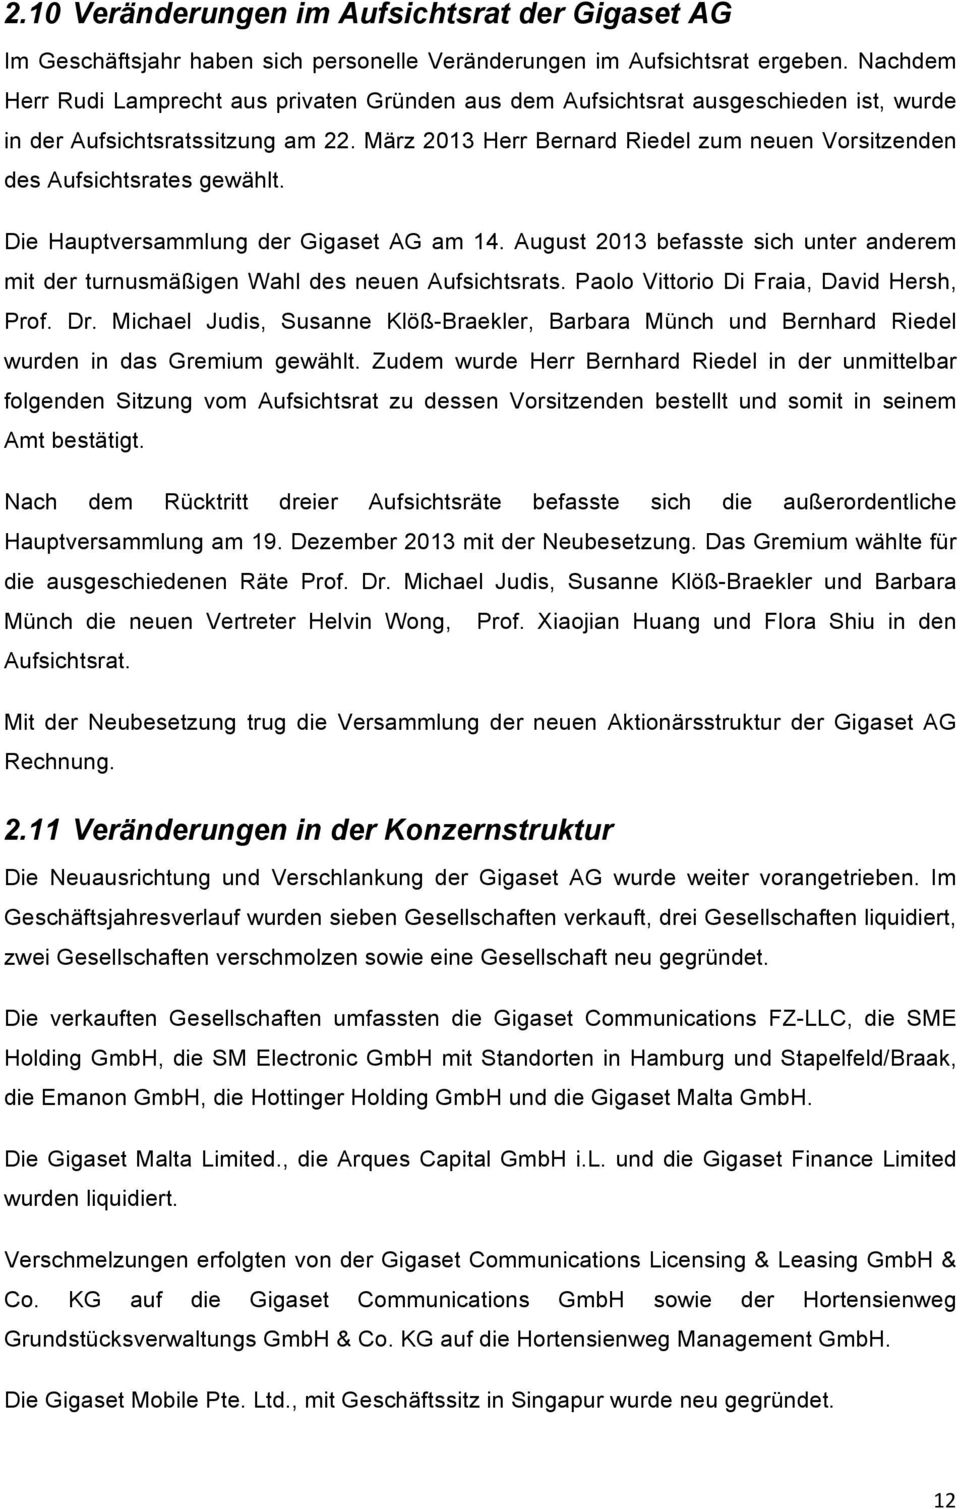 März 2013 Herr Bernard Riedel zum neuen Vorsitzenden des Aufsichtsrates gewählt. Die Hauptversammlung der Gigaset AG am 14.